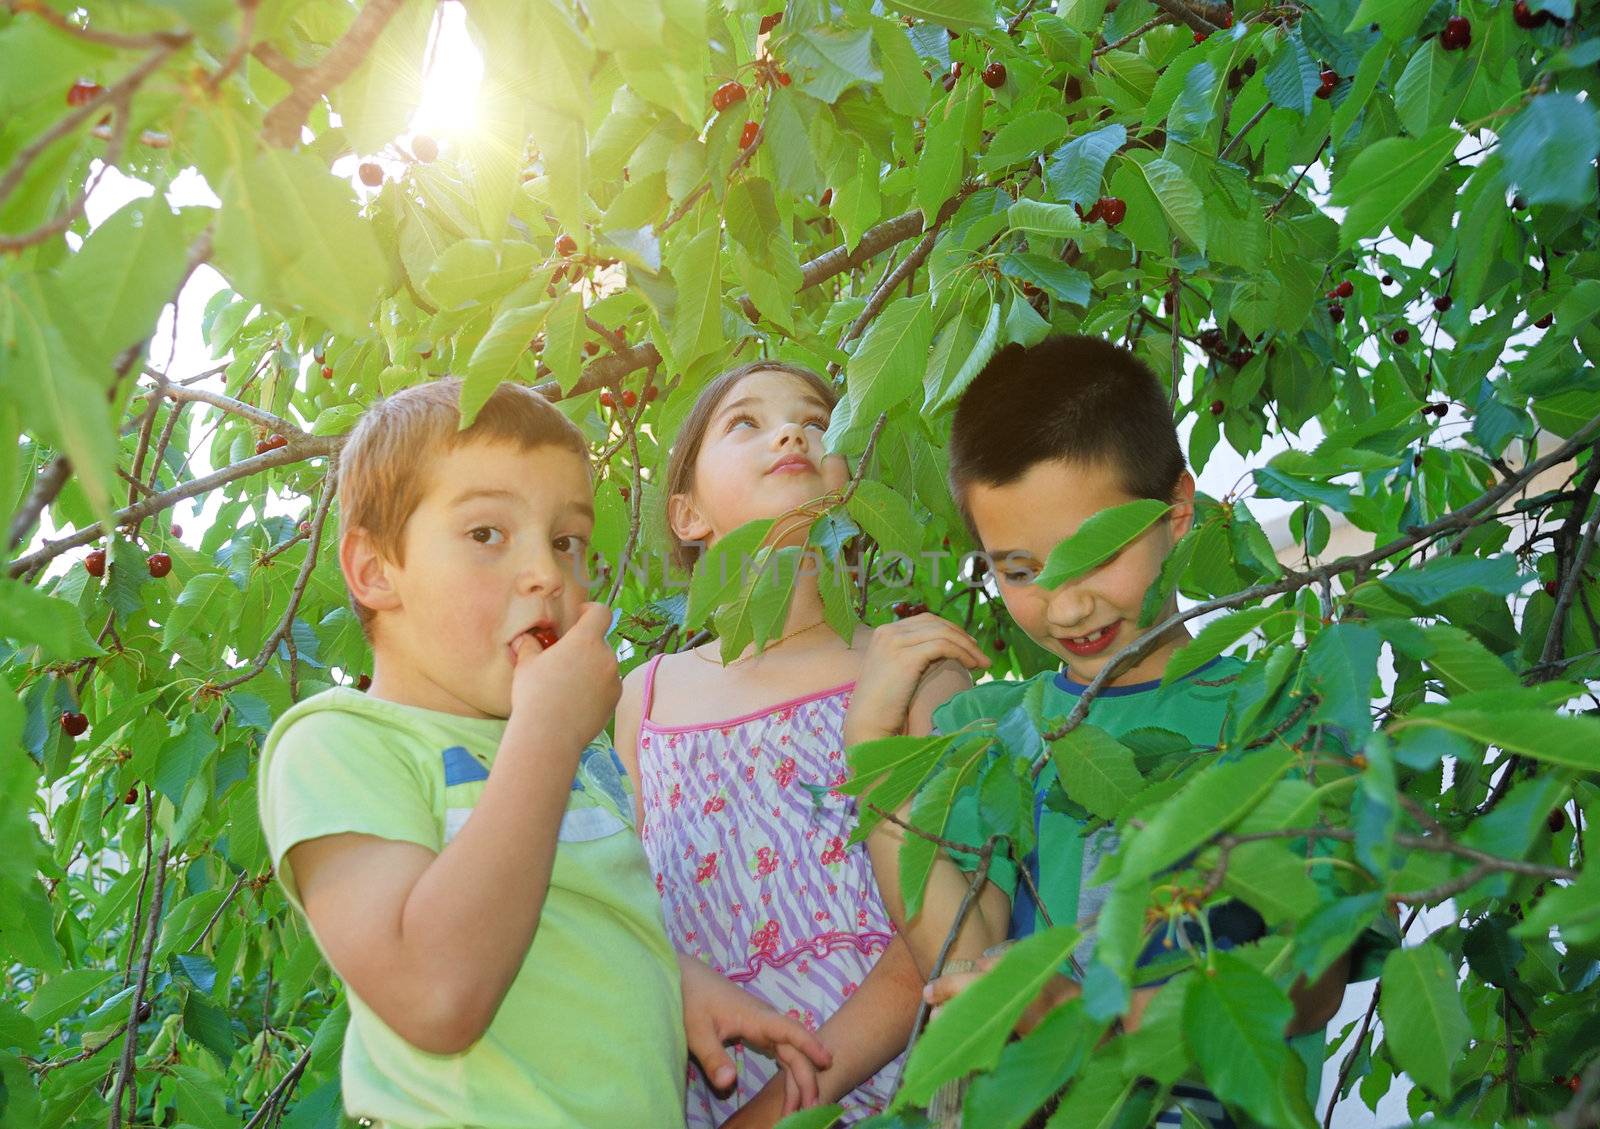 Children eating bing cherries by whitechild